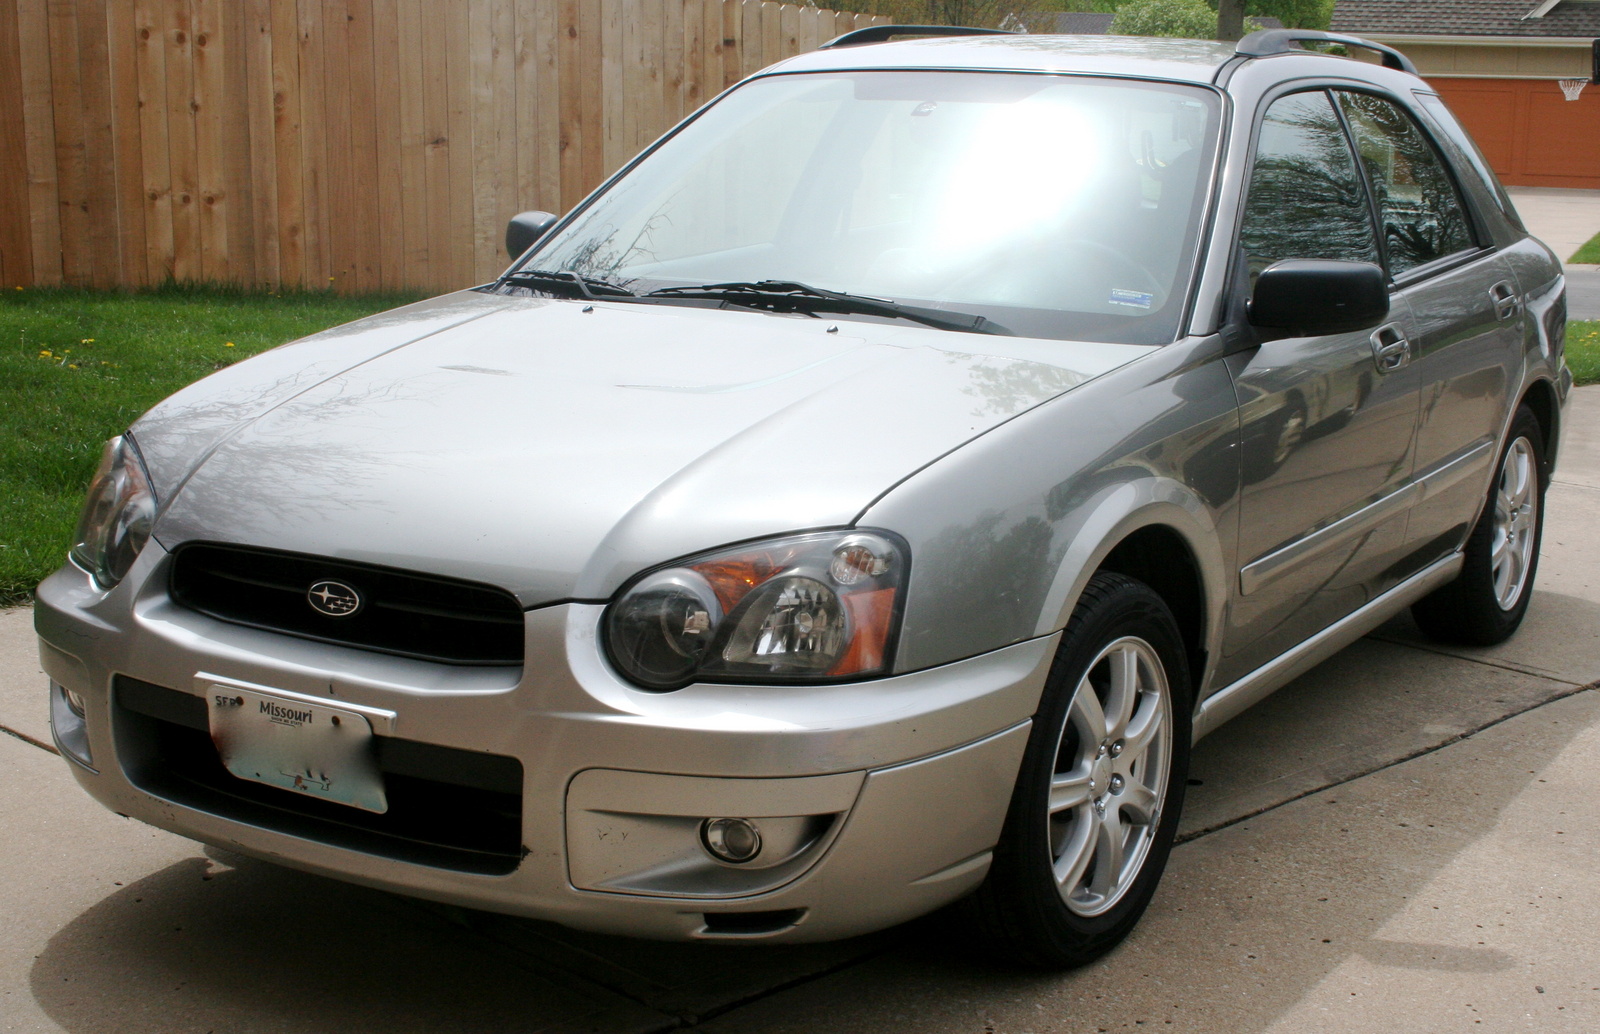 2005 Subaru Impreza Pictures CarGurus